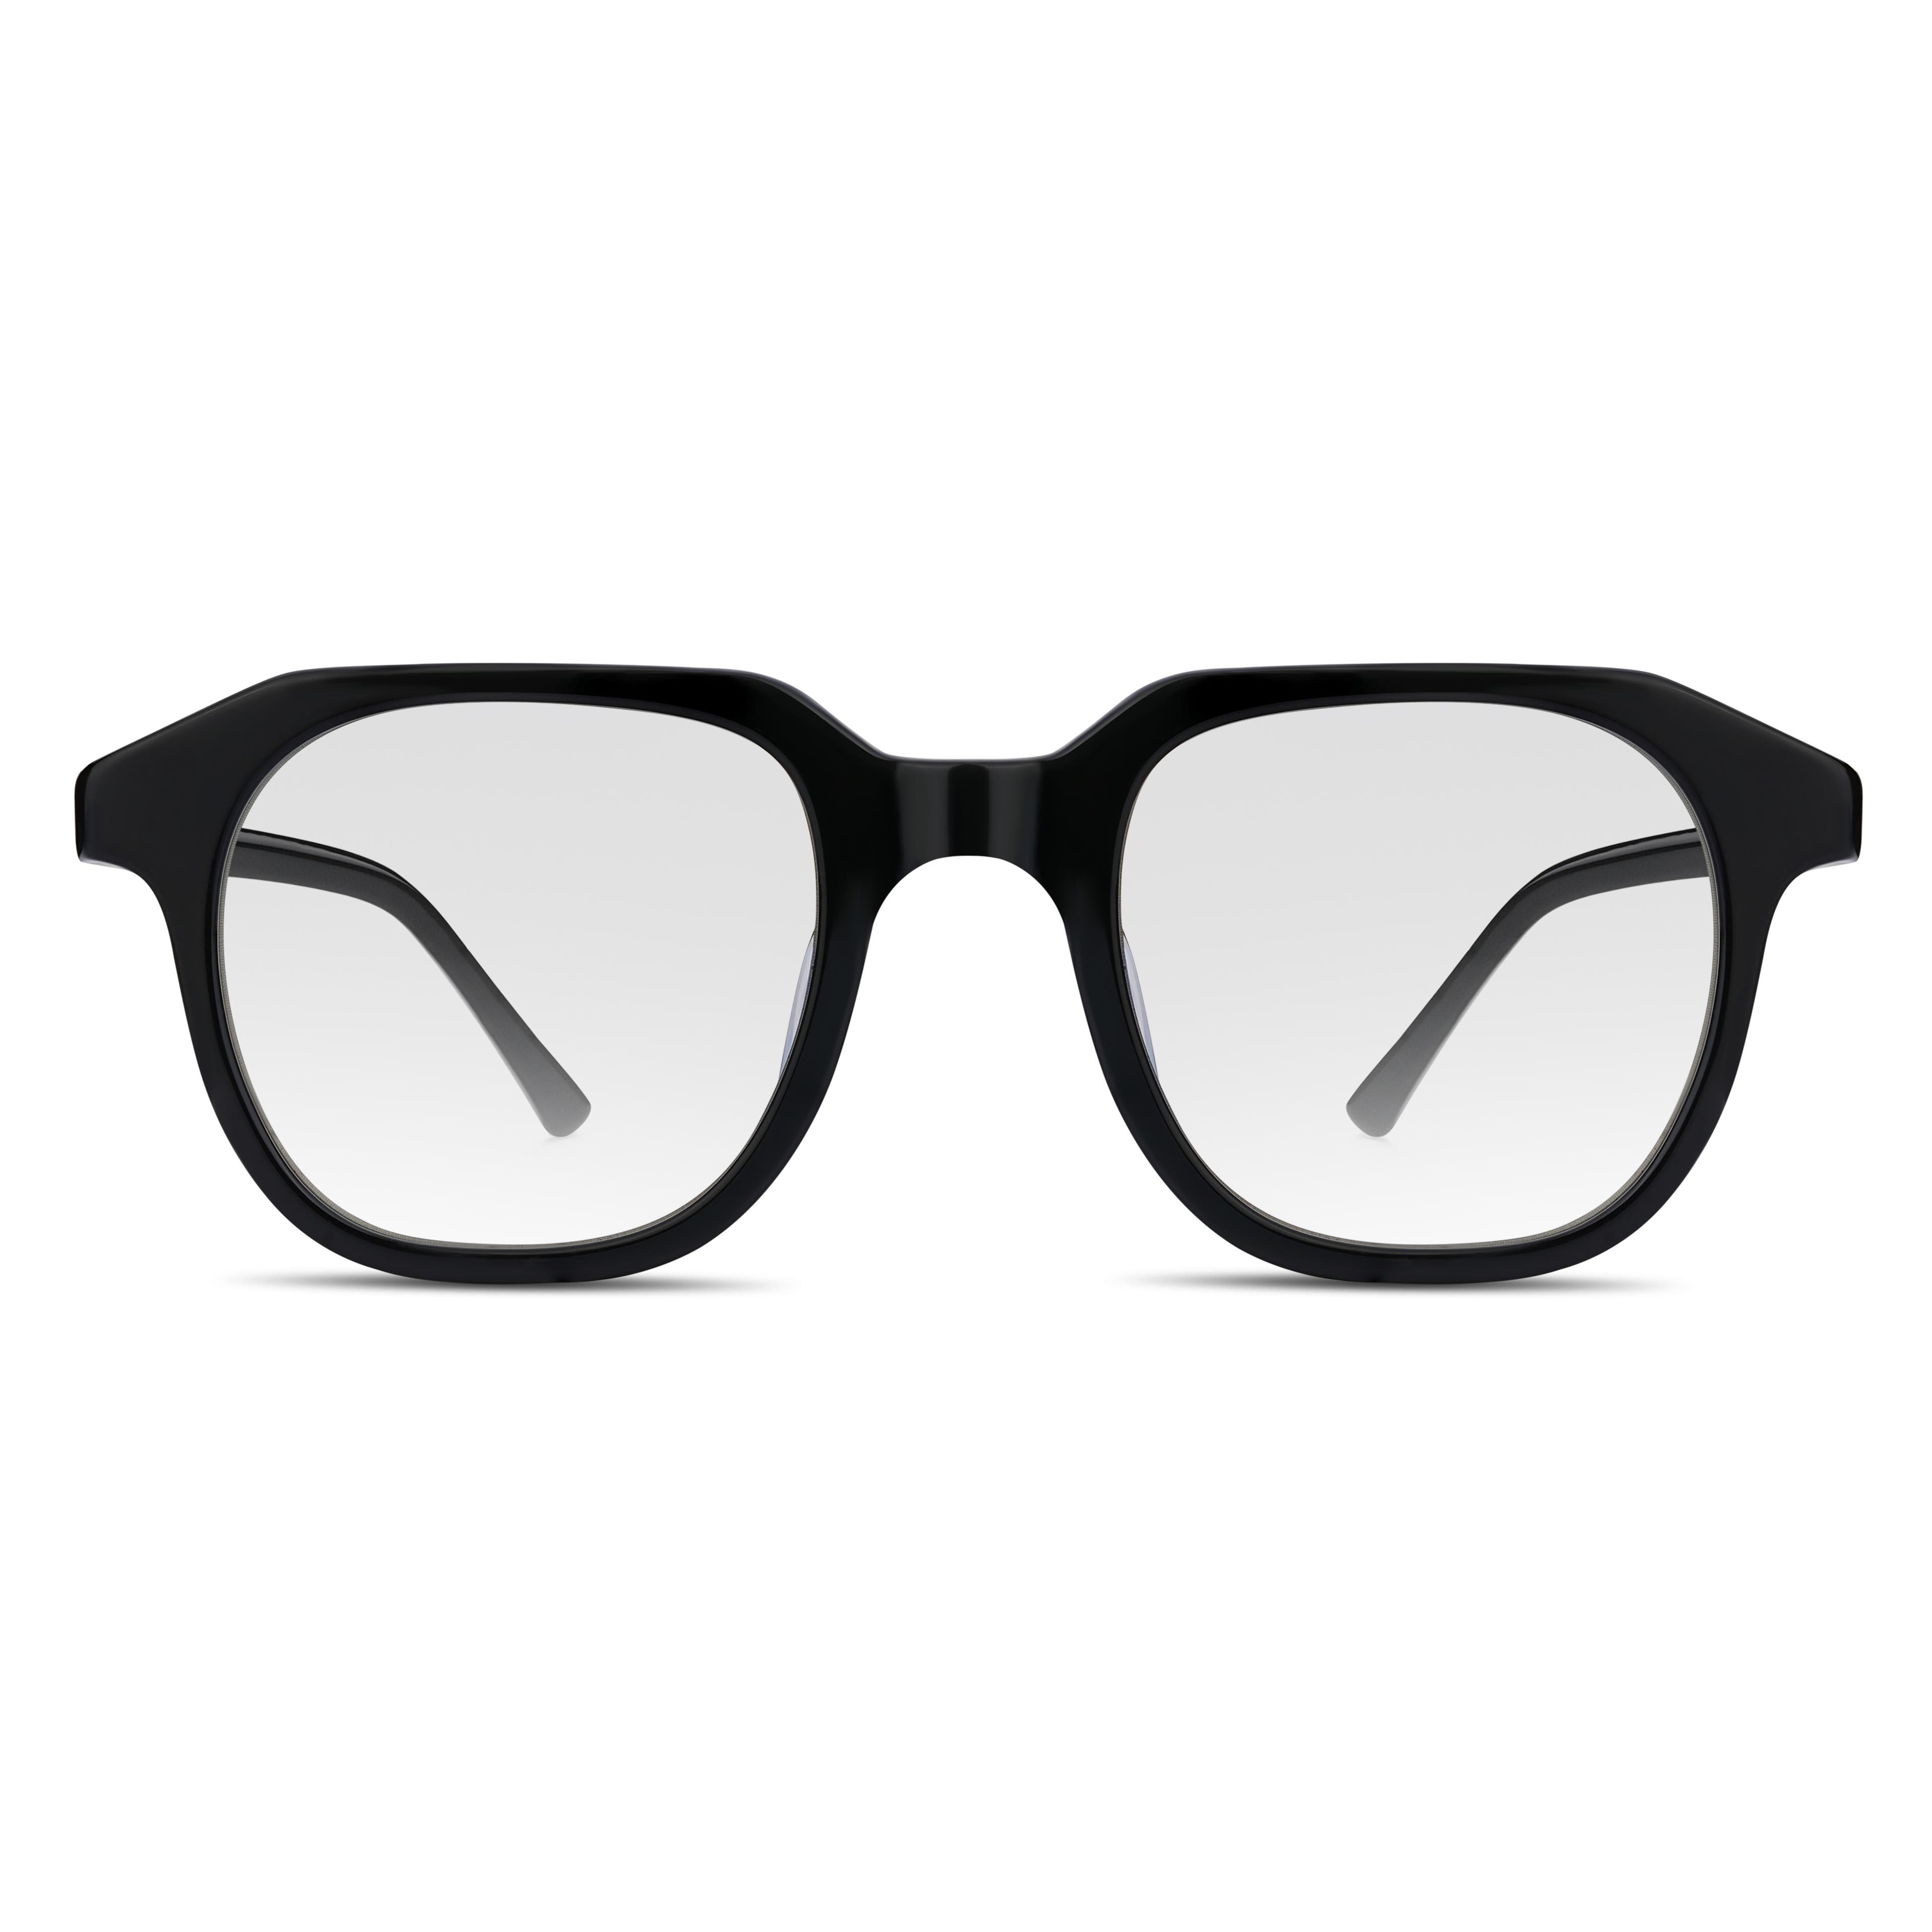 Černé brýle s geometrickými rohovými obroučkami s čirými čočkami blokujícími modré světlo